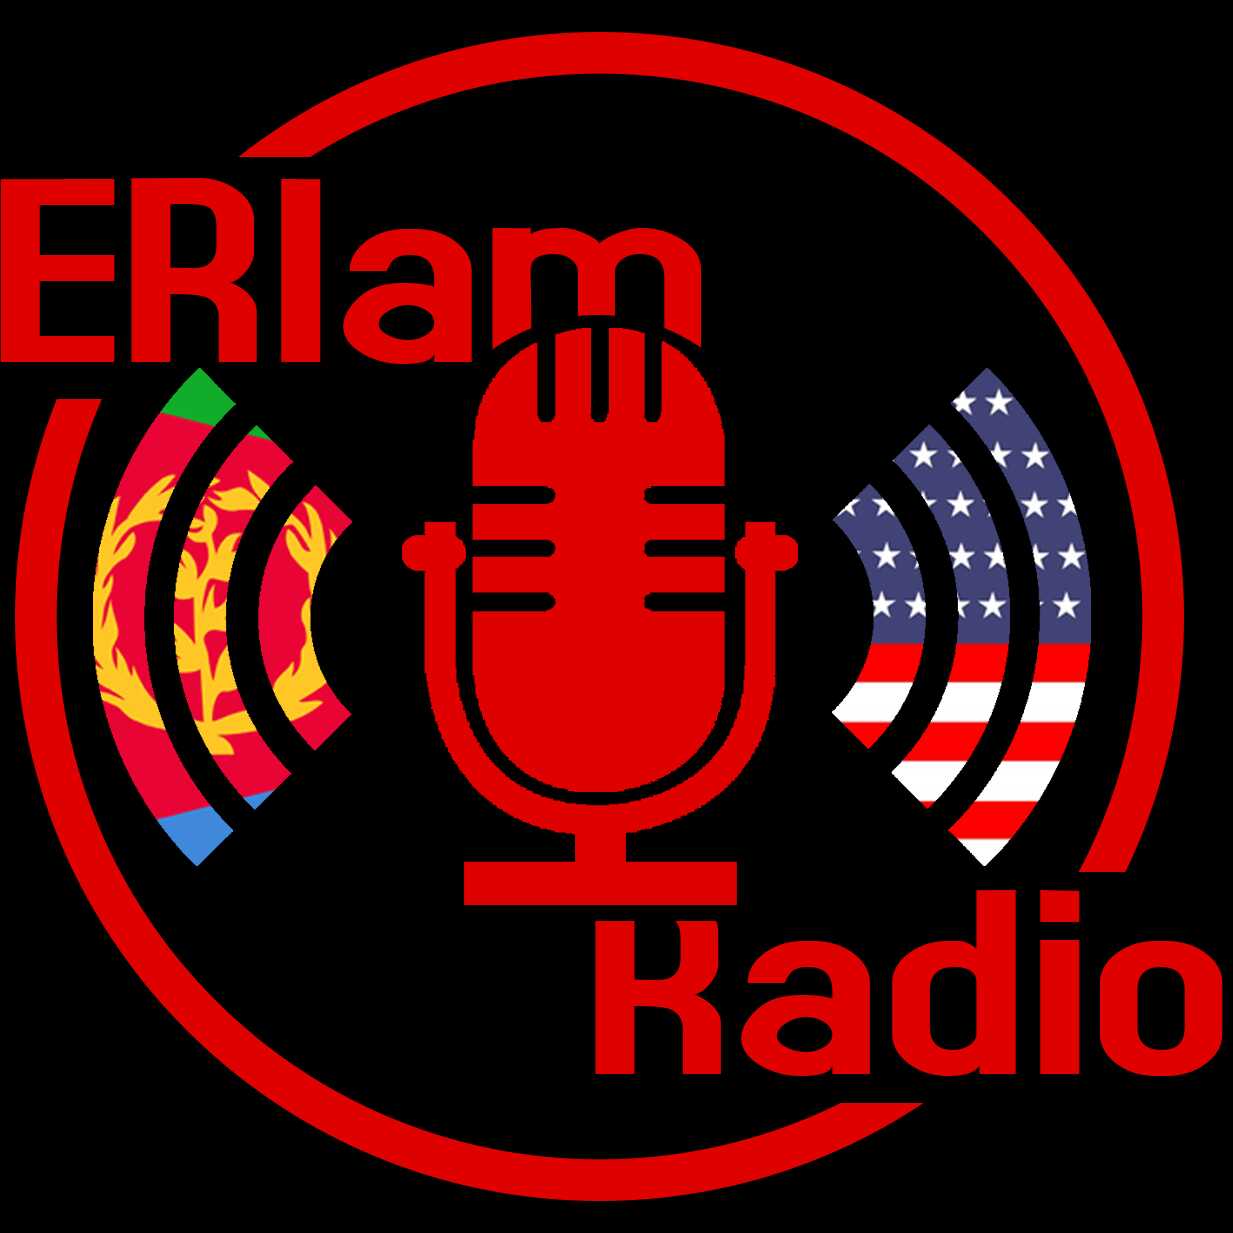 ERIam Podcast - Episode 1